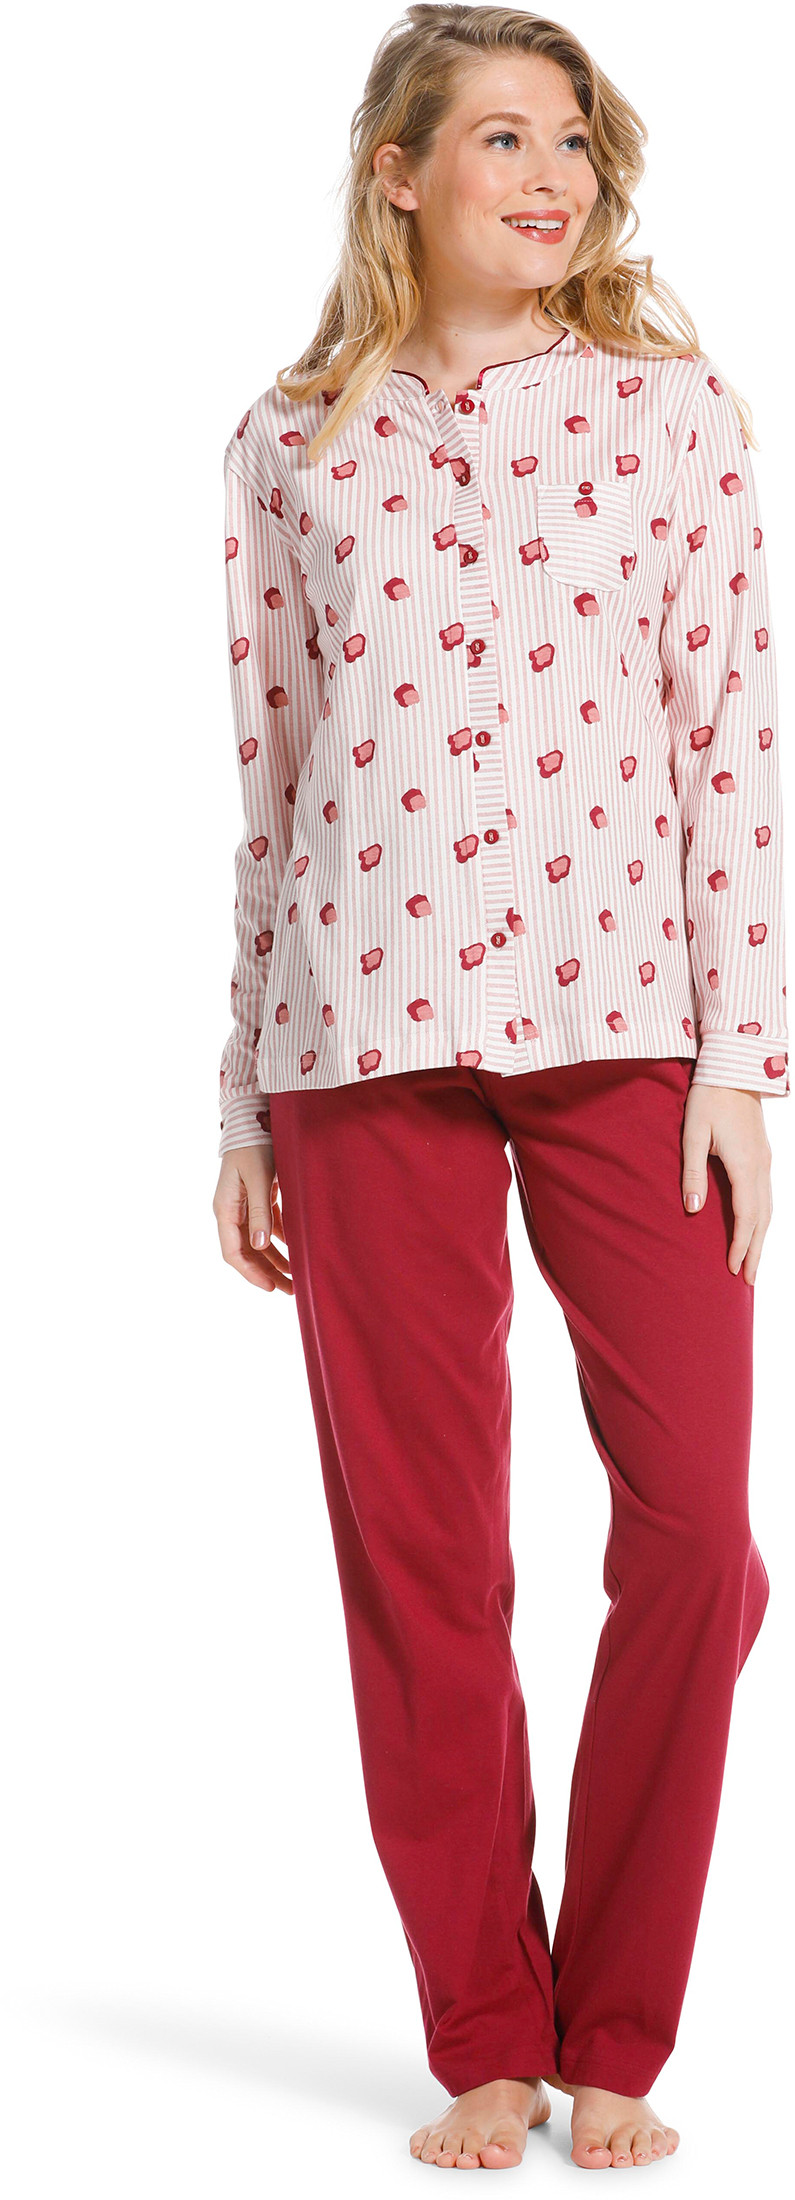 Pastunette doorknoop dames pyjama 20222-104-6-52